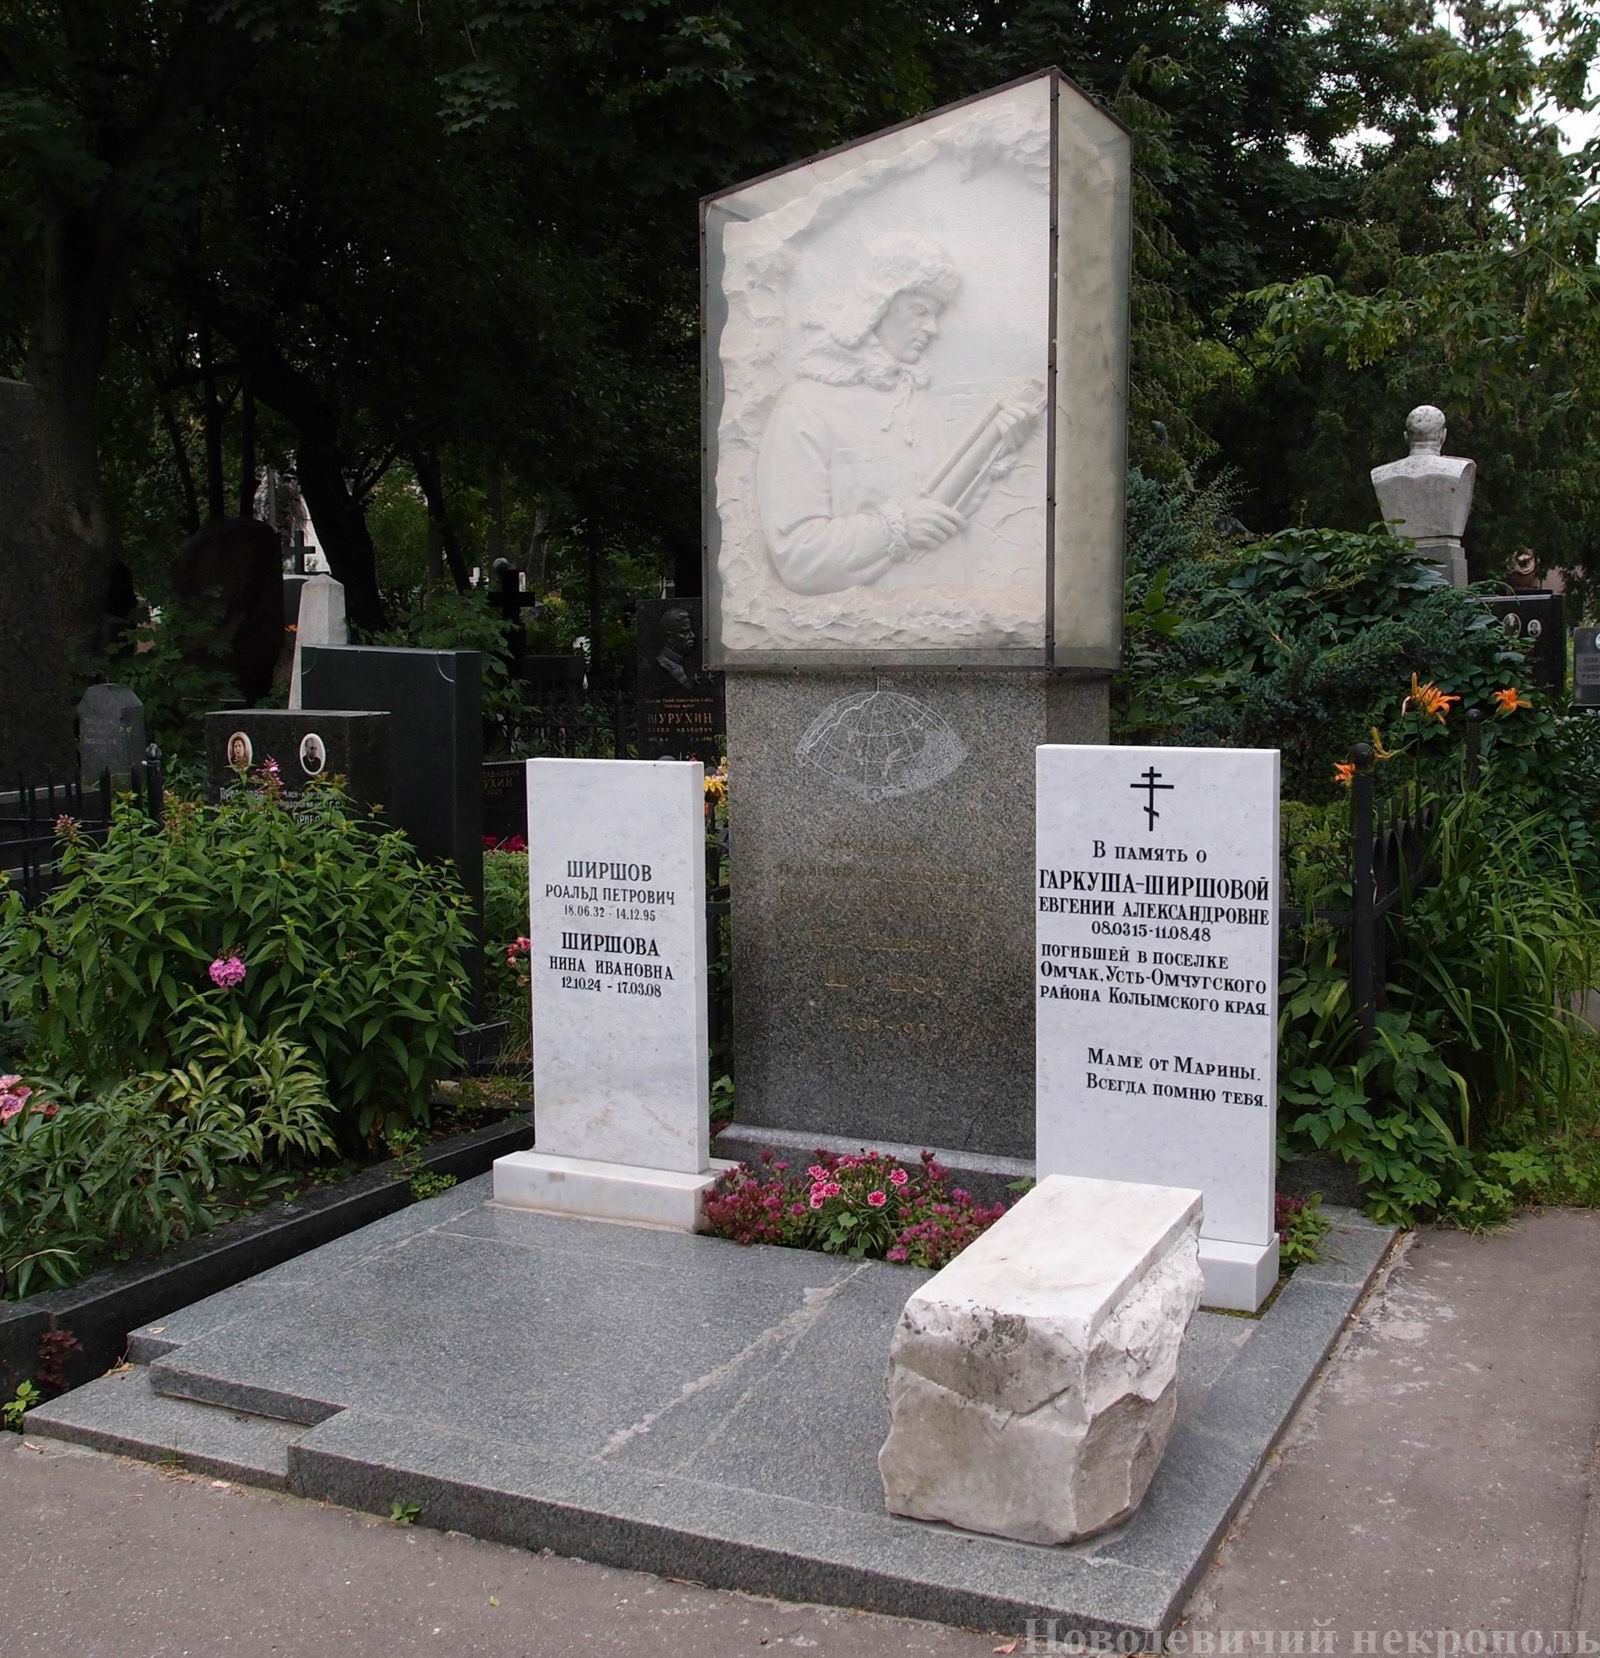 Памятник на могиле Ширшова П.П. (1905-1953), ск. Н.Крандиевская, на Новодевичьем кладбище (4-23-12). Нажмите левую кнопку мыши, чтобы увидеть фрагменты памятника крупно.